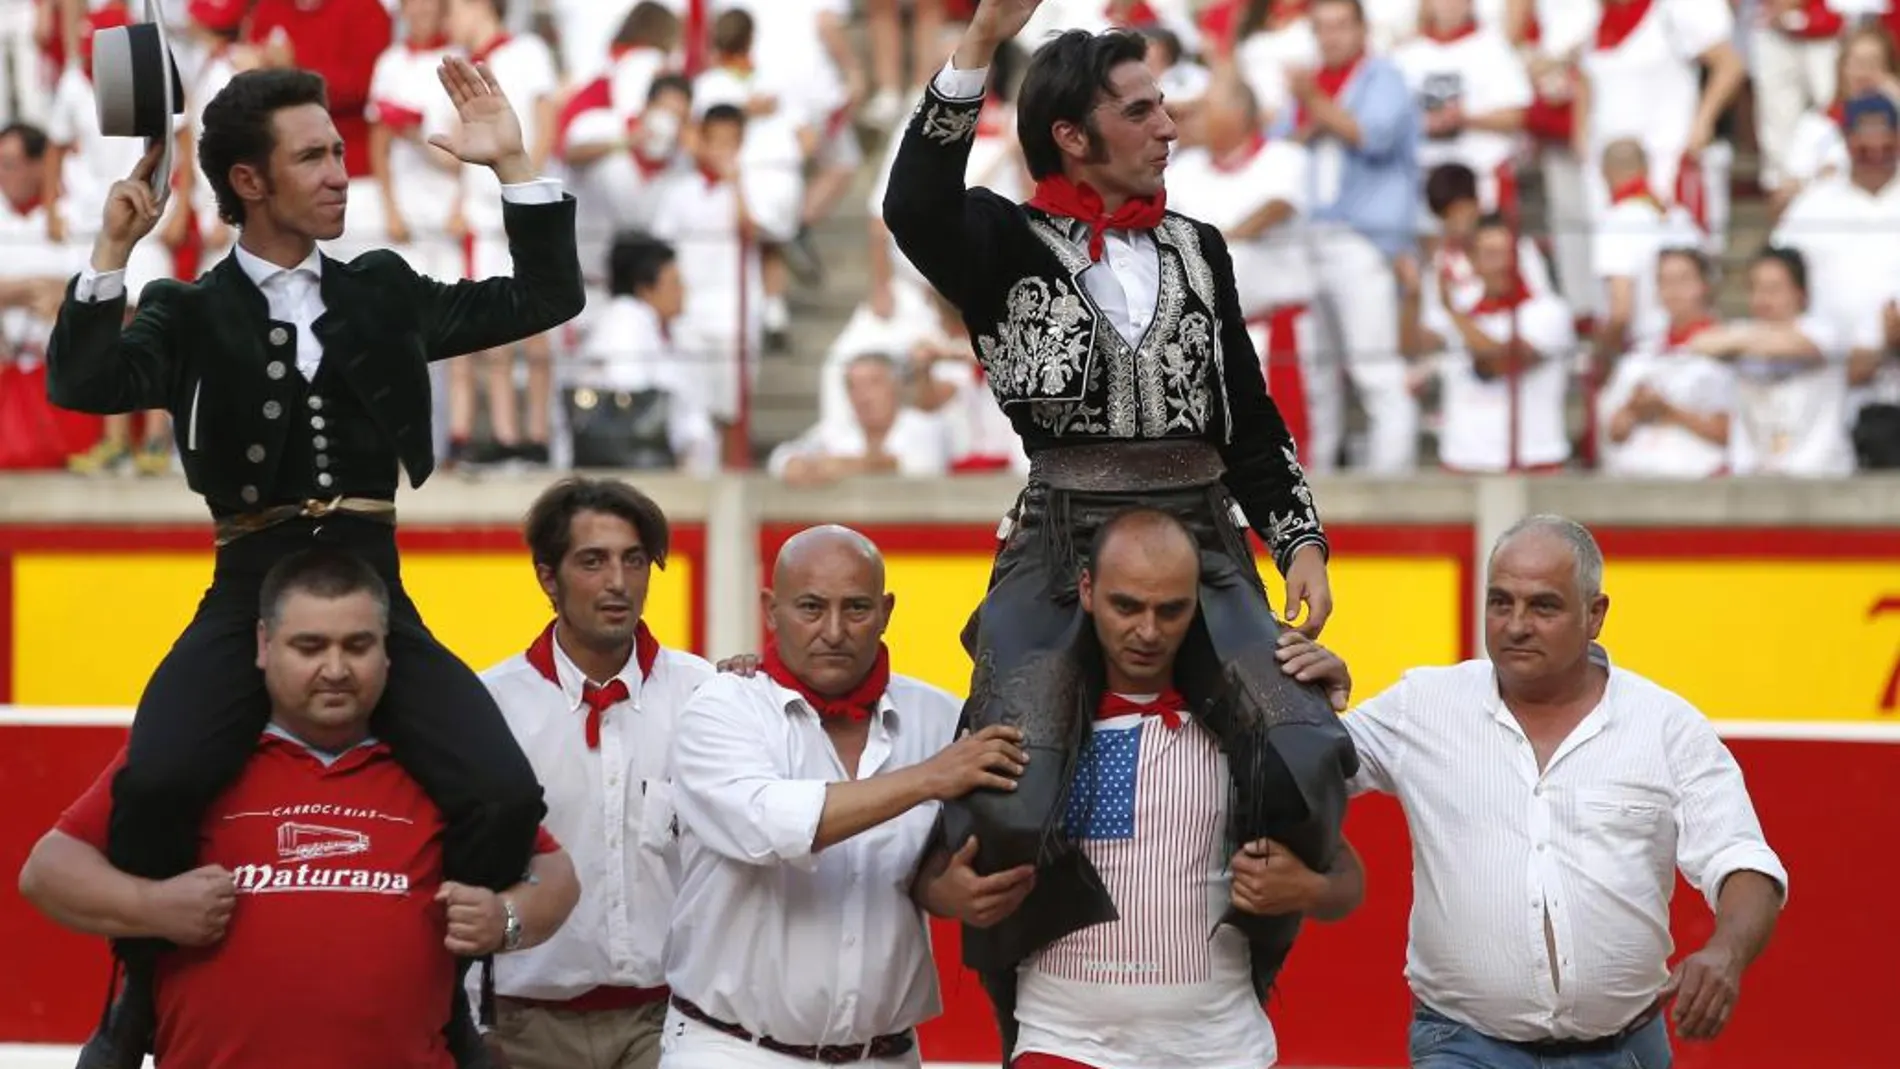 Leonardo Hernández y Roberto Armendáriz saliendo a hombros en Pamplona